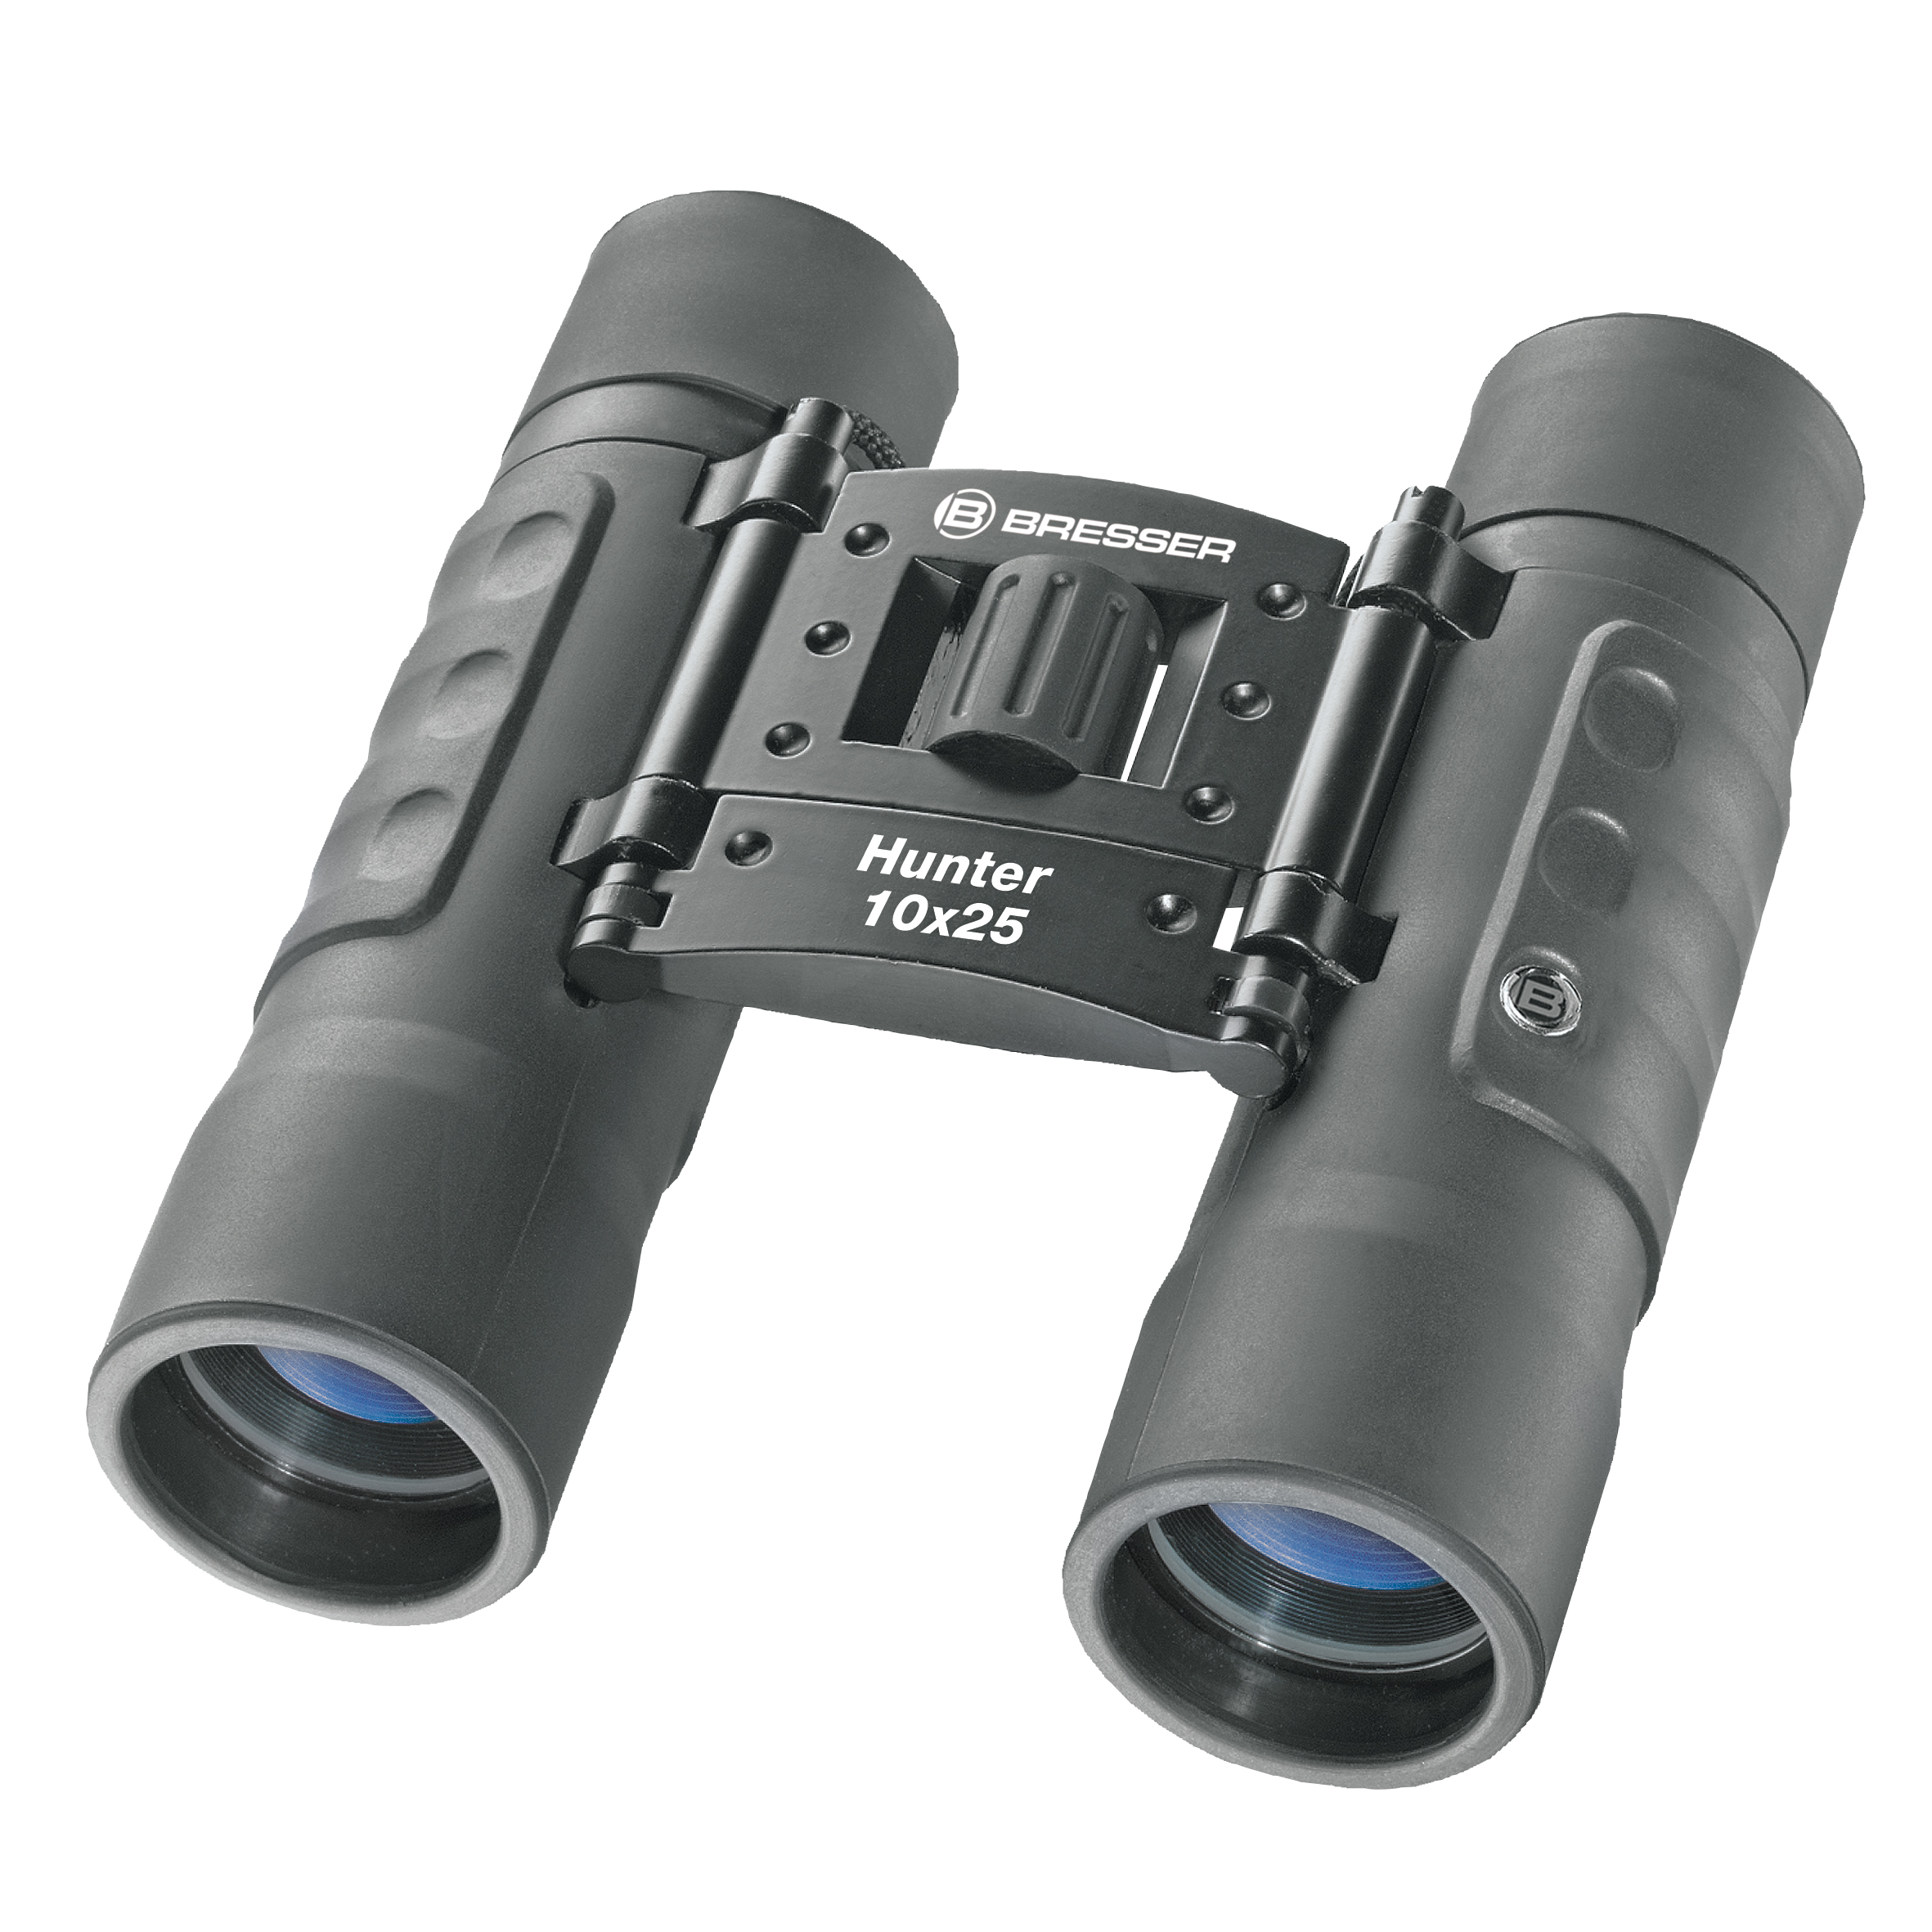 BRESSER Hunter 10x25 Pocket Binoculars